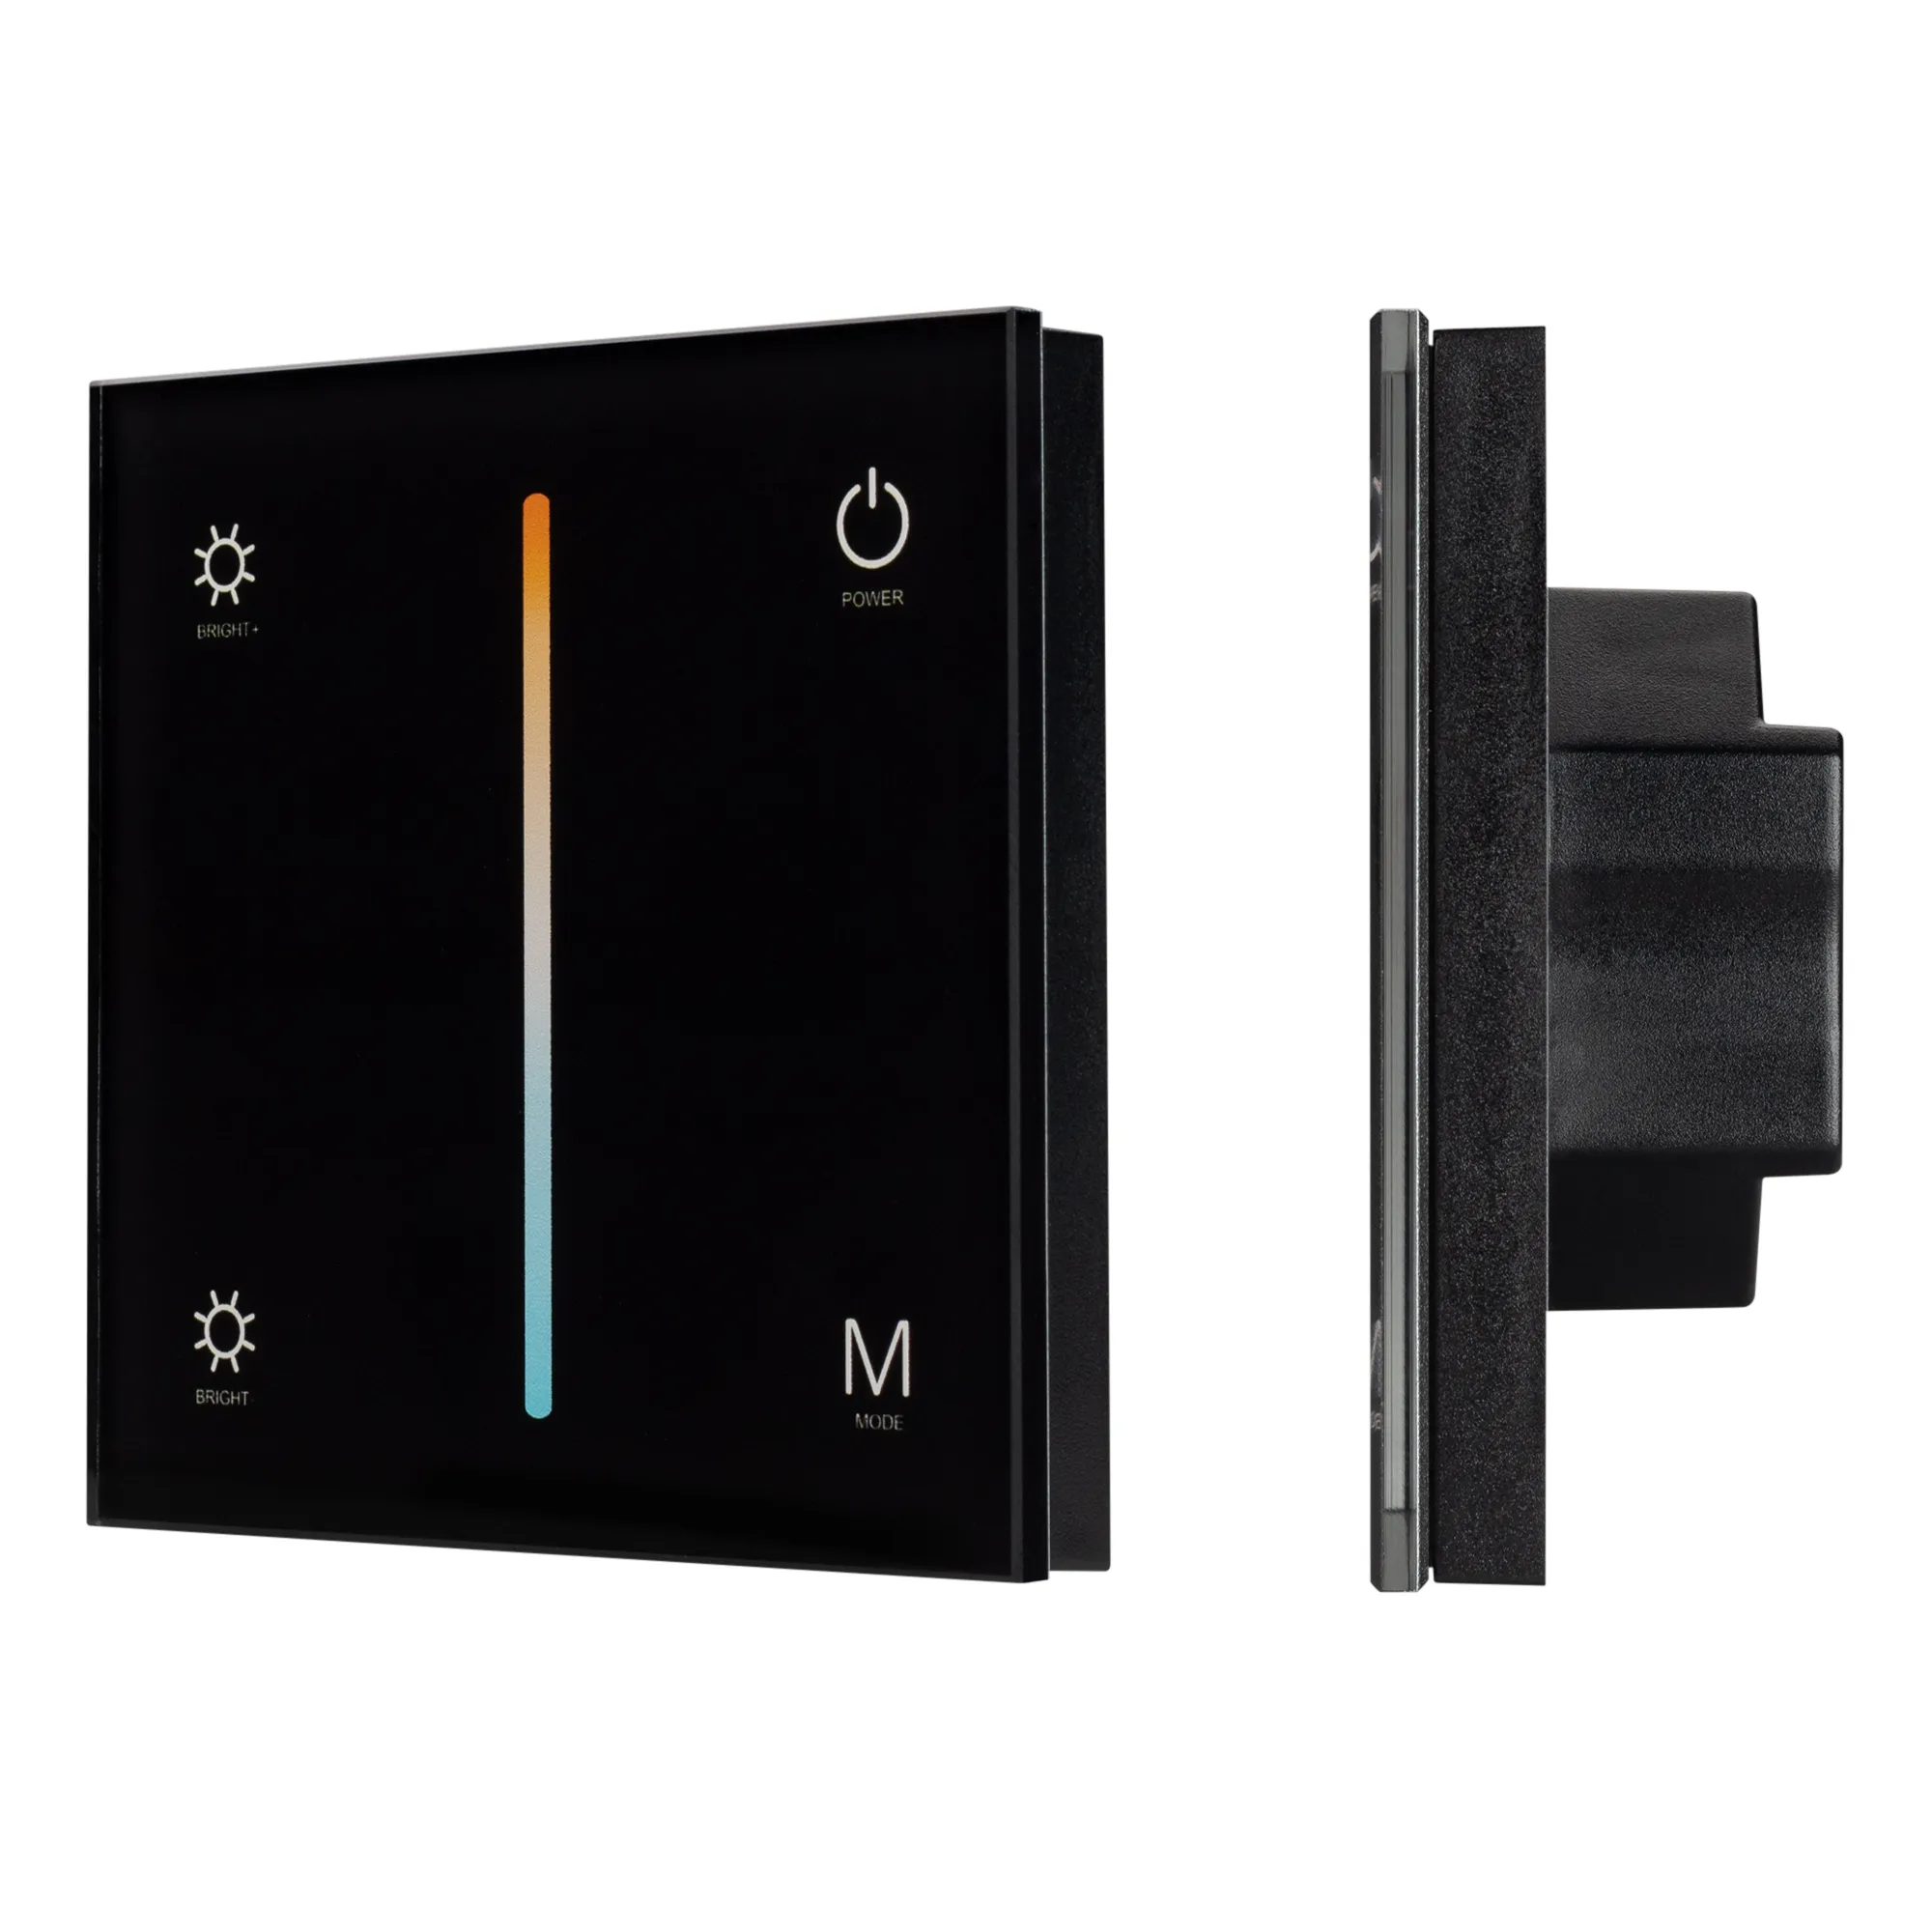 Панель SMART-P21-MIX-G-IN Black (12-24V, 4x3A, Sens, 2.4G) (Arlight, IP20 Пластик, 5 лет) - Изображение